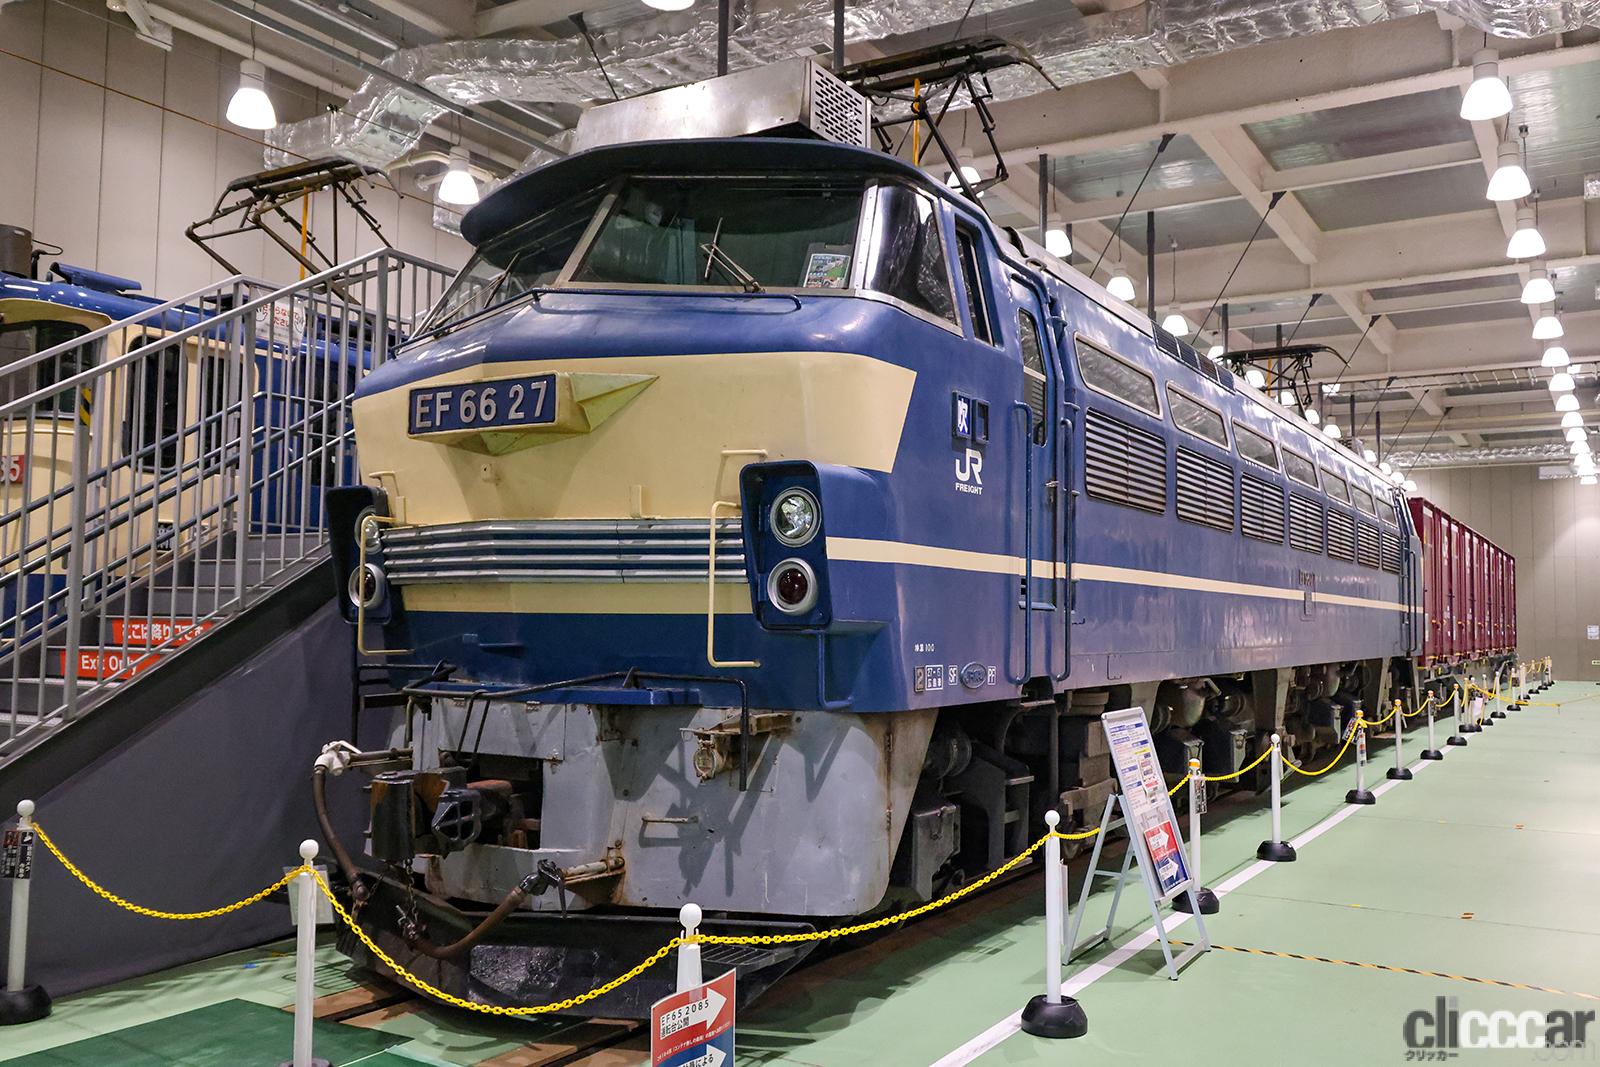 京都鉄道博物館で国鉄最強の電気機関車ef66形27号機を特別展示中 Clicccar Com